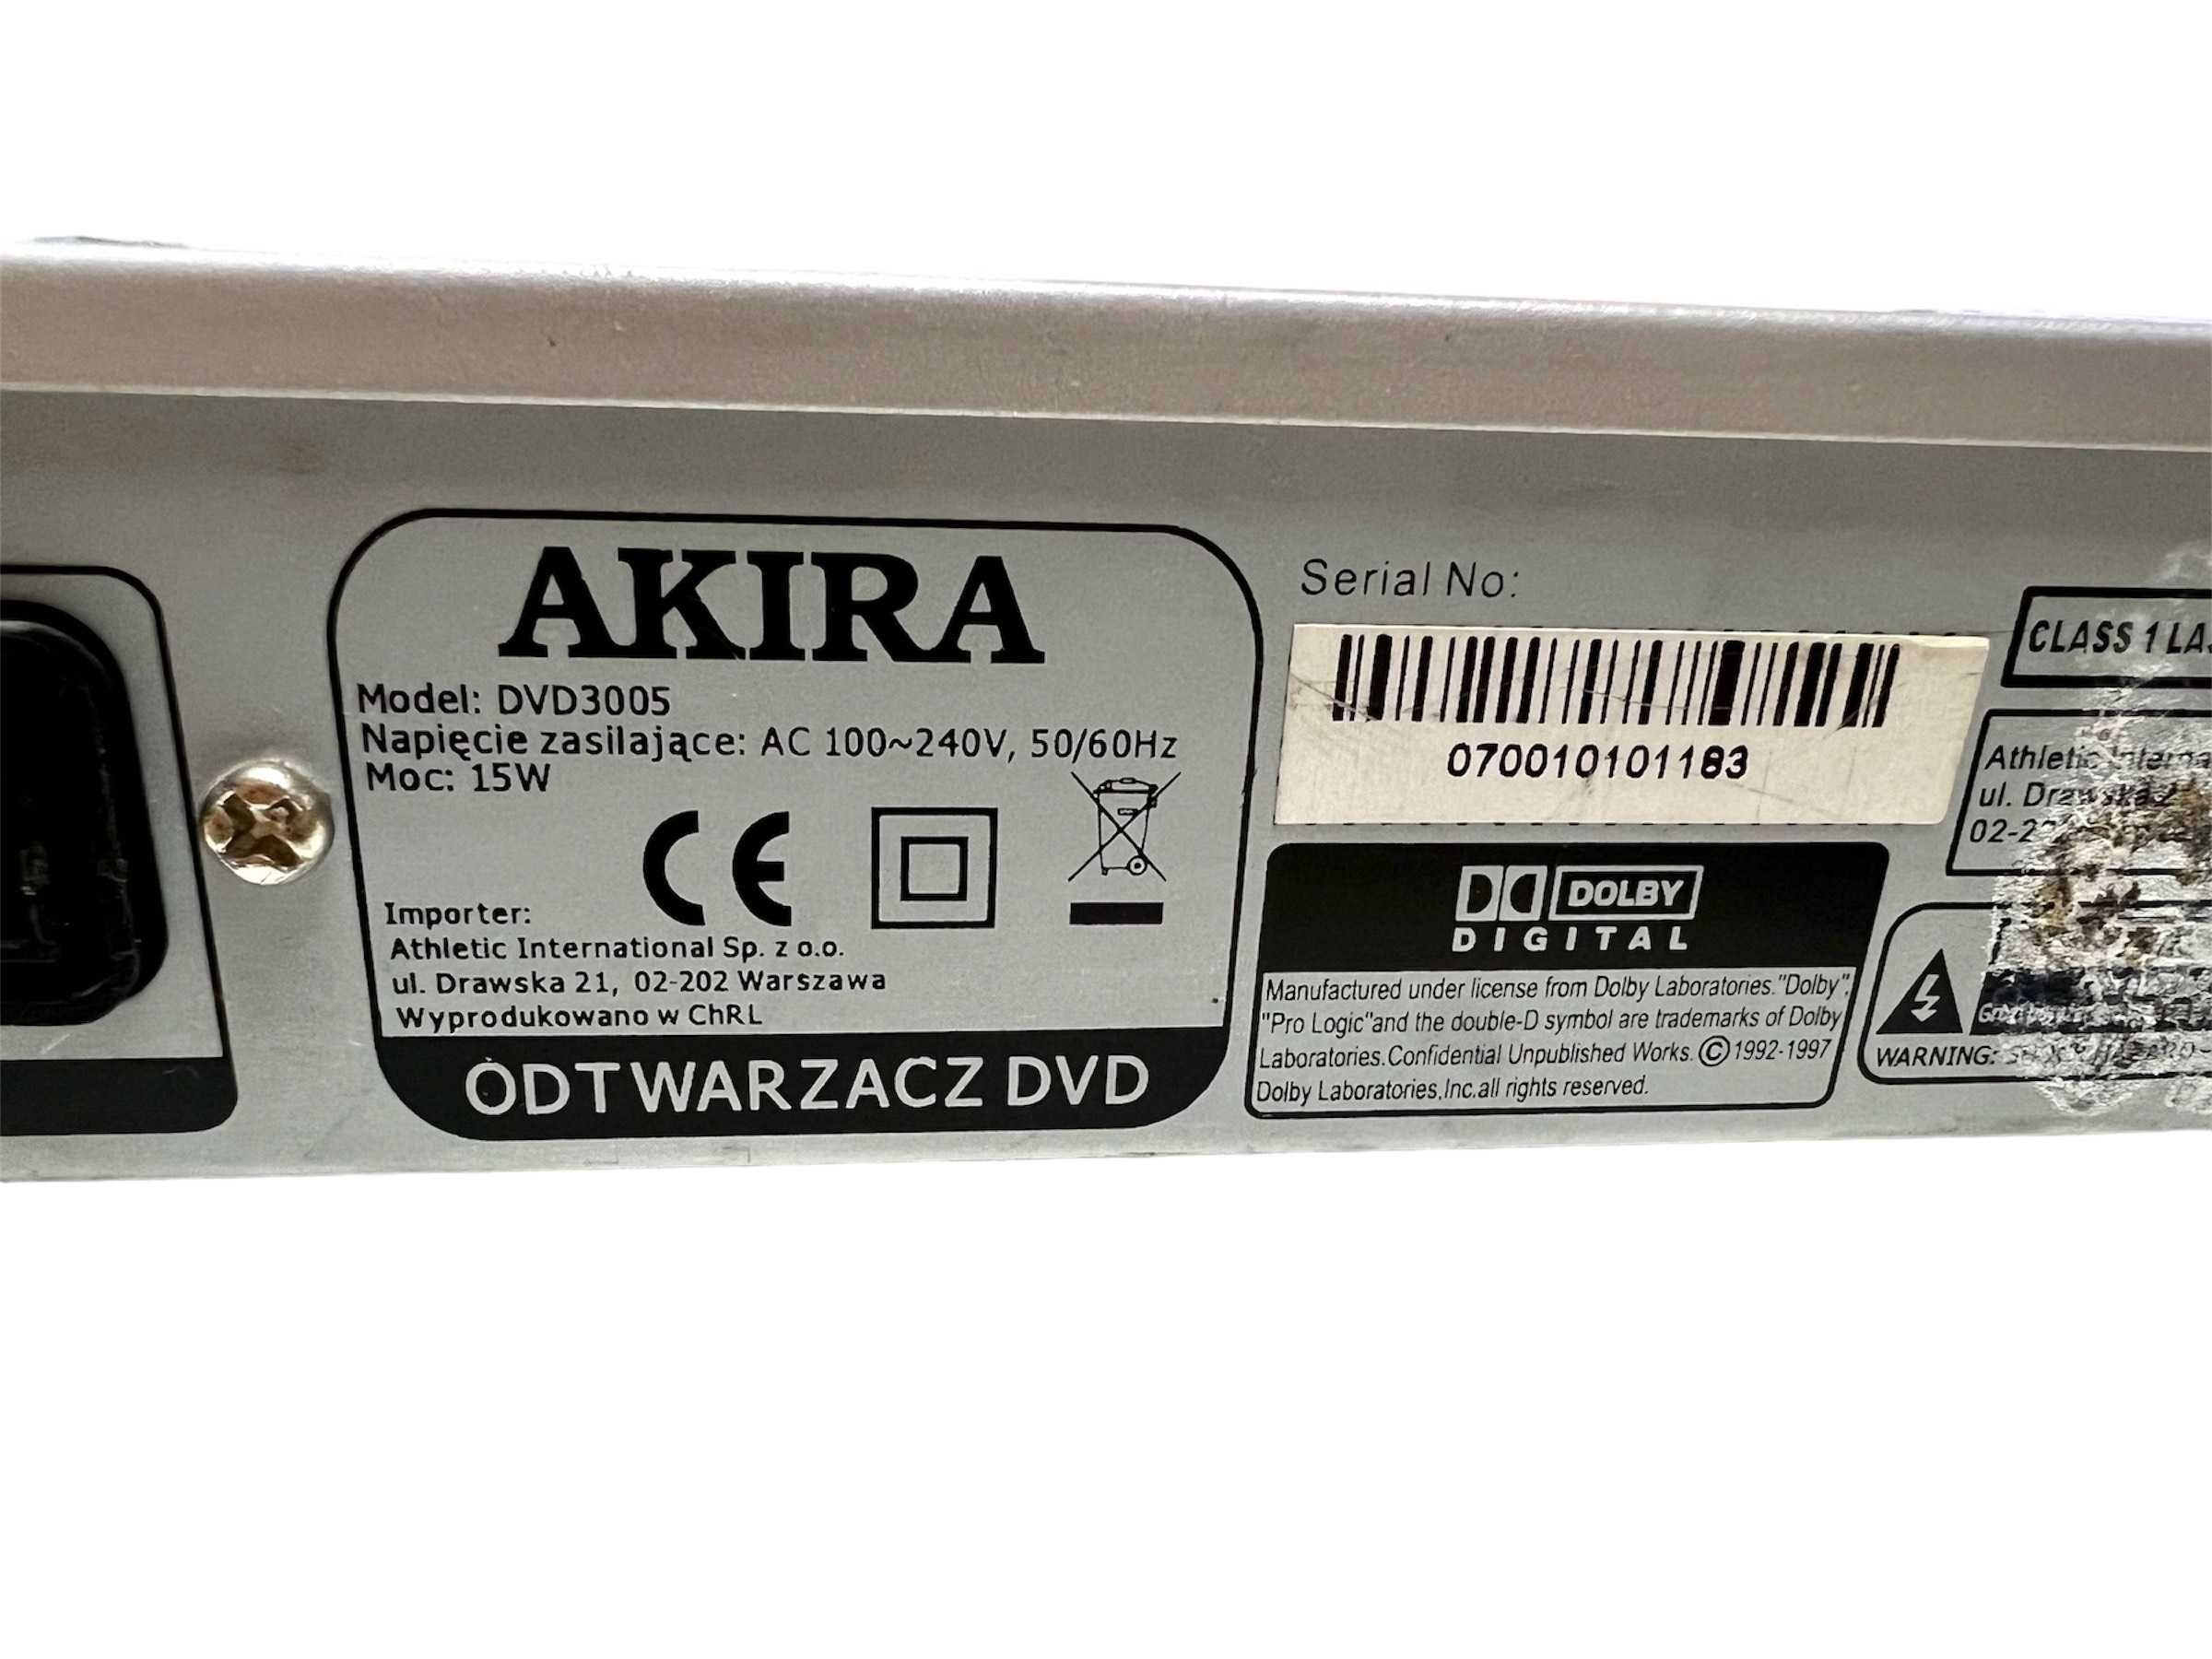 Odtwarzacz DVD Akira DVD3005 NowyLombard/Raków